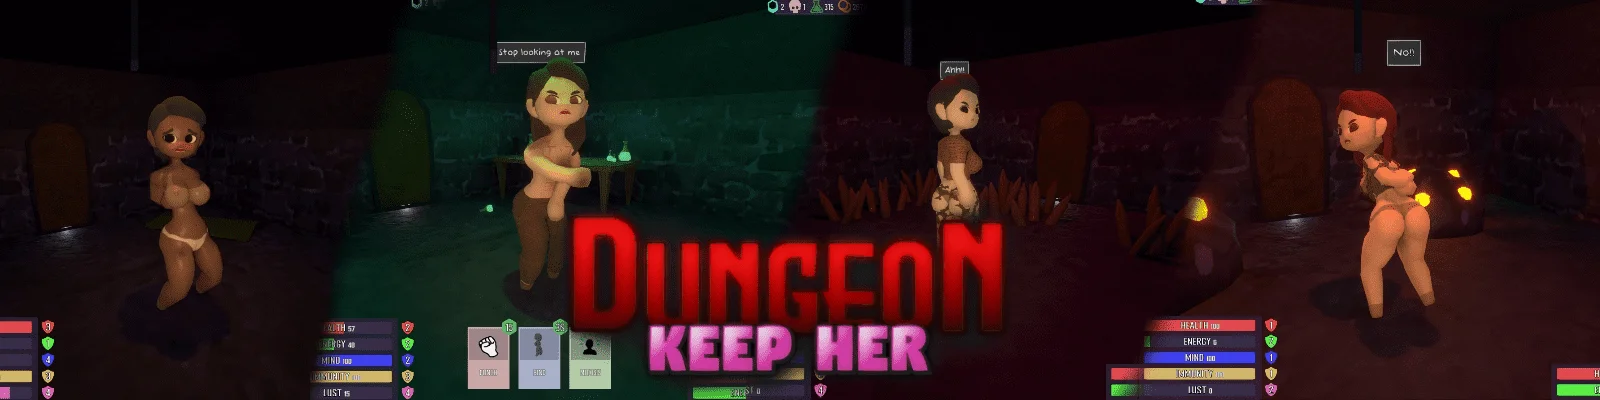 Download keepherdev - Dungeon: Keep Her - Version 0.7